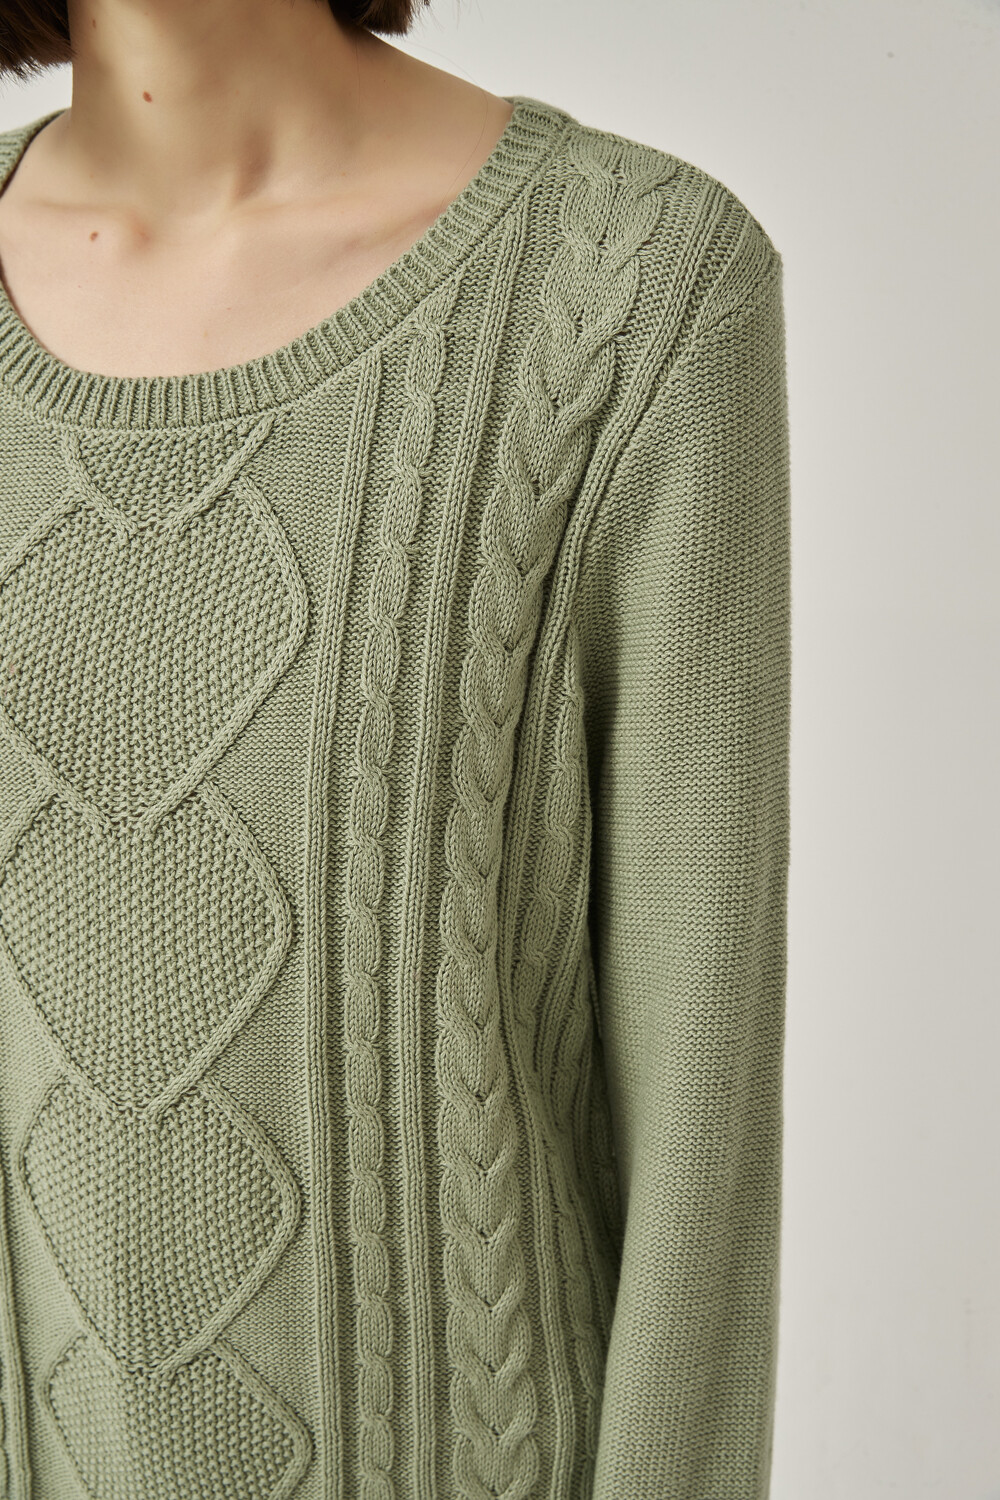 Sweater Aspasia Verde Claro